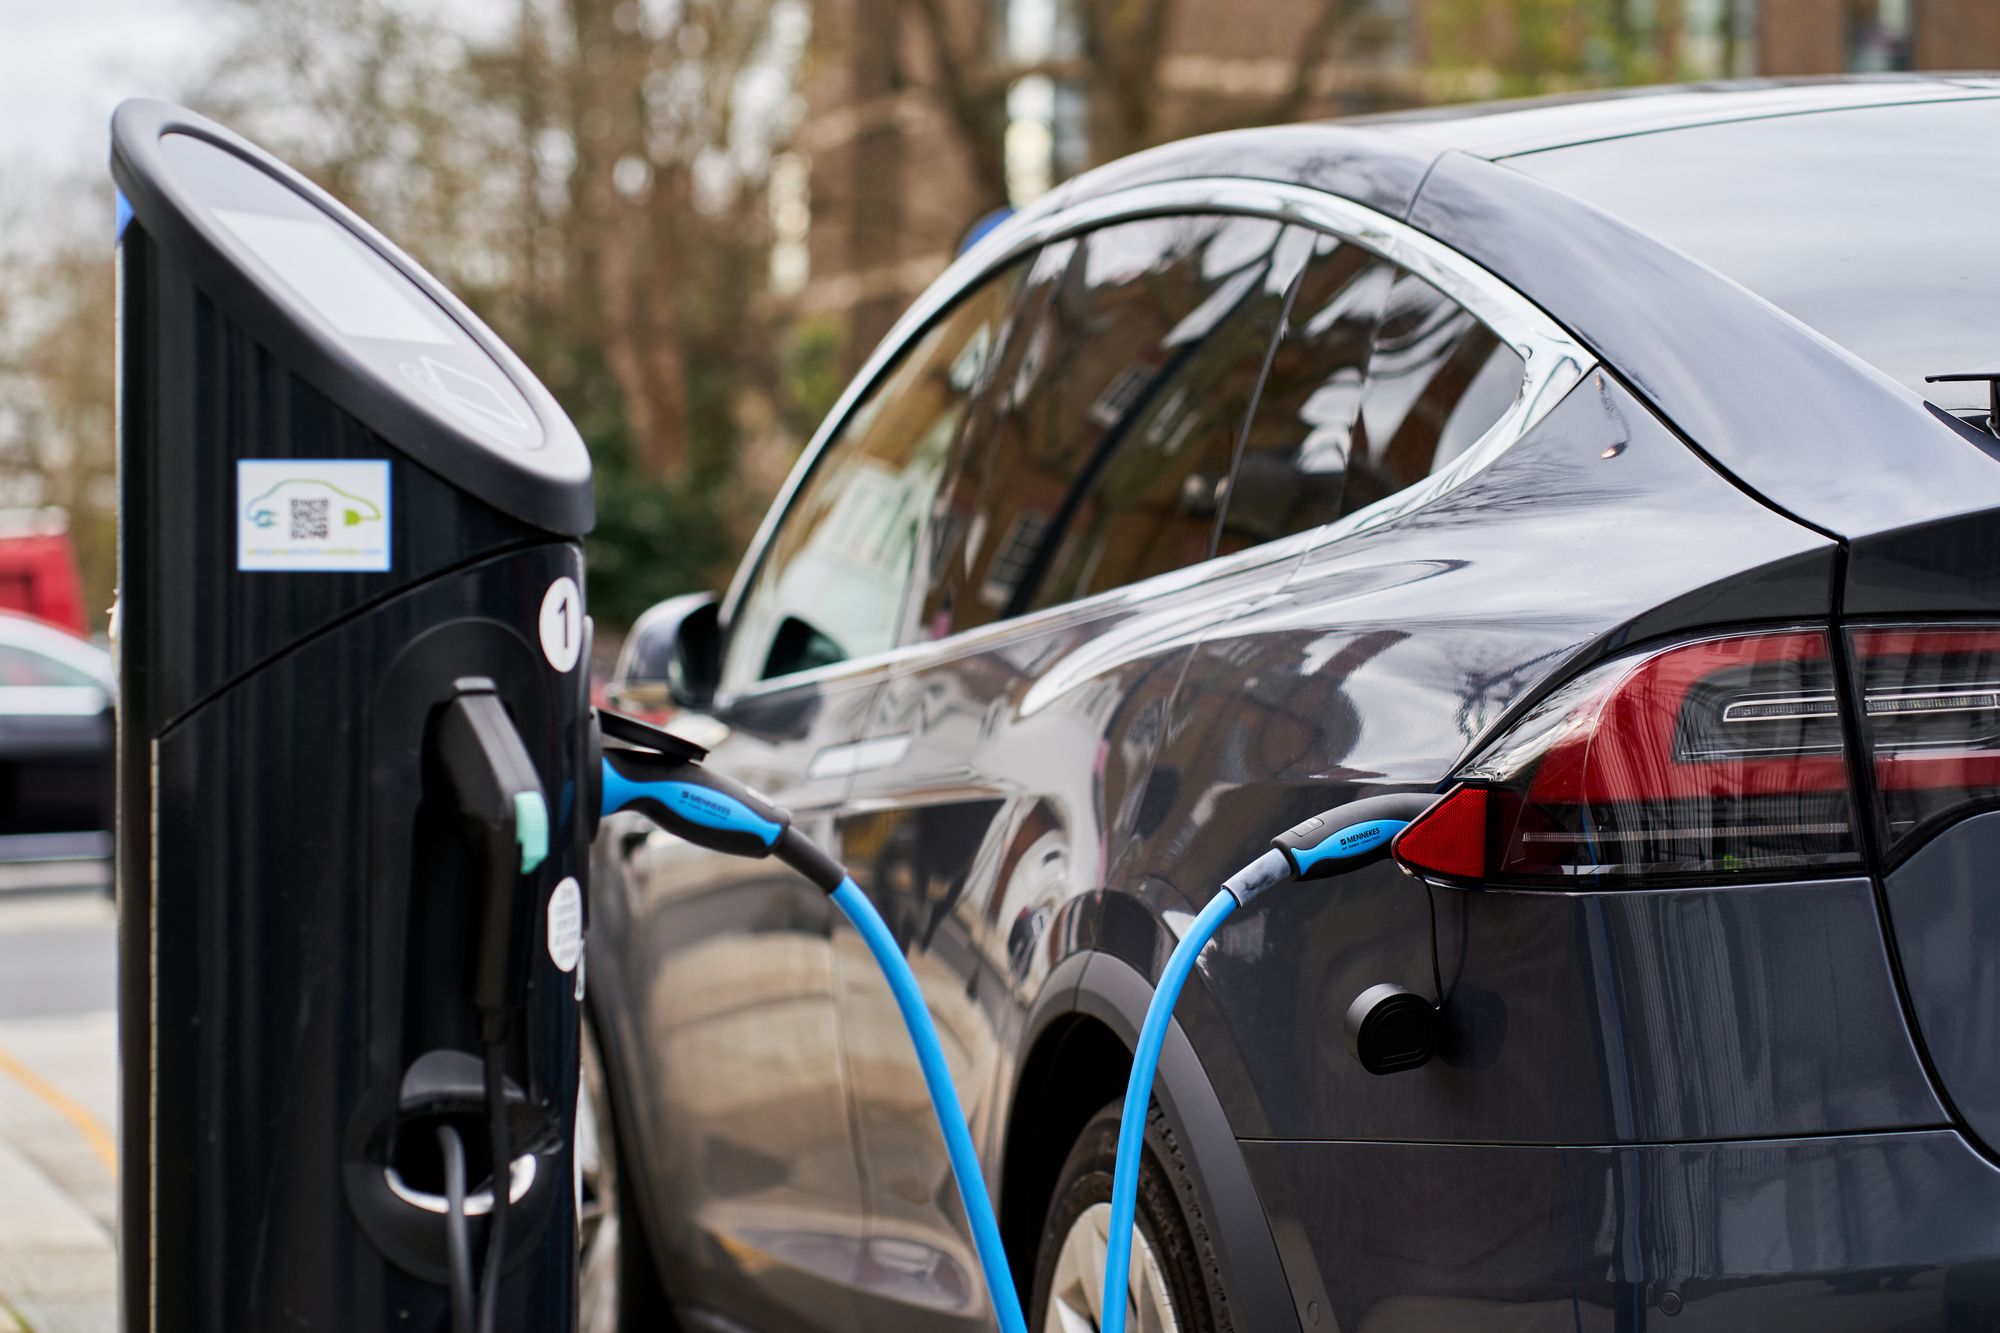 Hulumtimi zbulon se veturat me benzin dhe naftë janë më të mira se ato elektrike